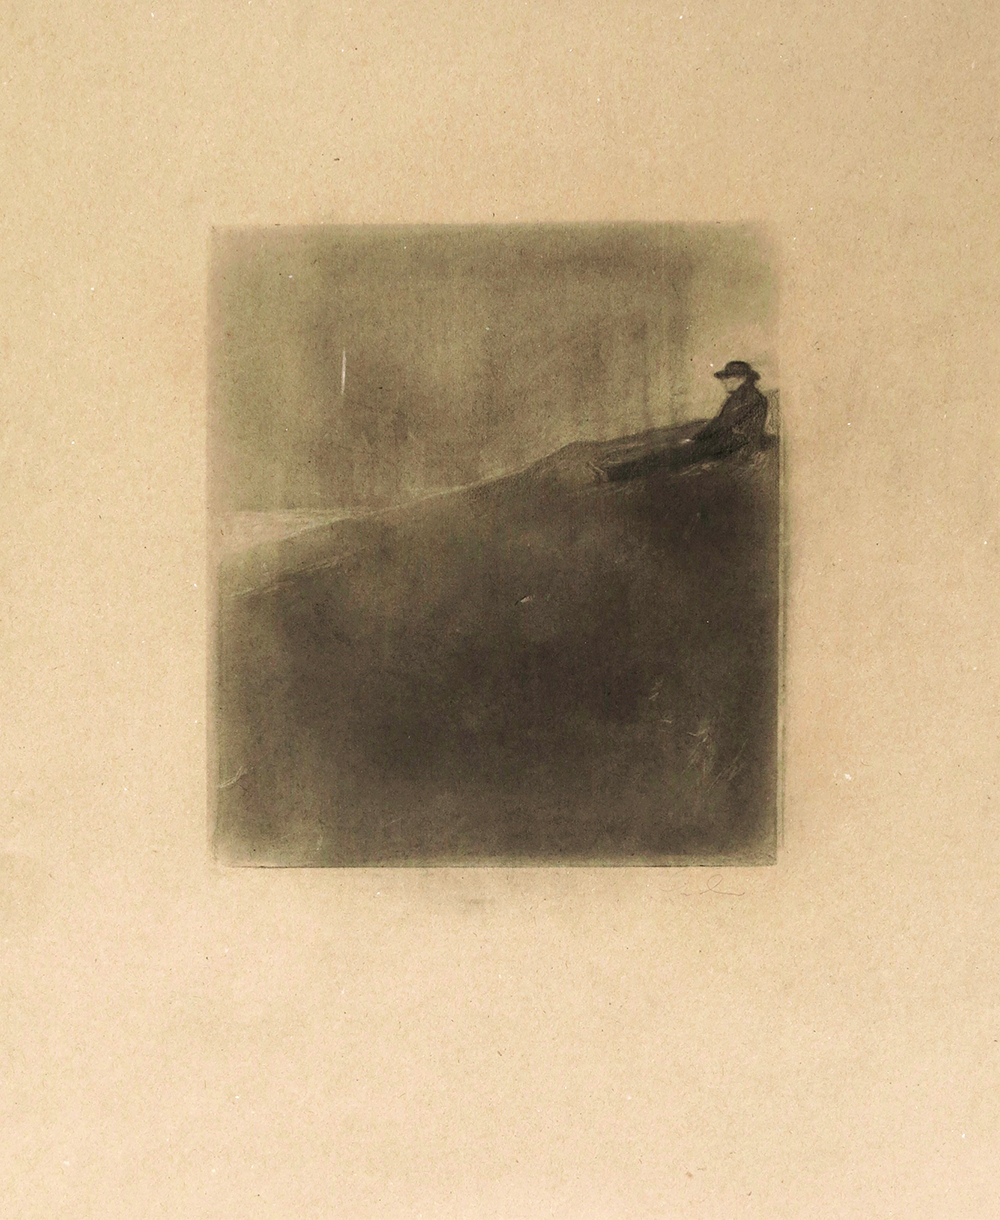 Pedro Pascoinho, Absence, 2019, carvão sobre papel, 55x60 cm BD